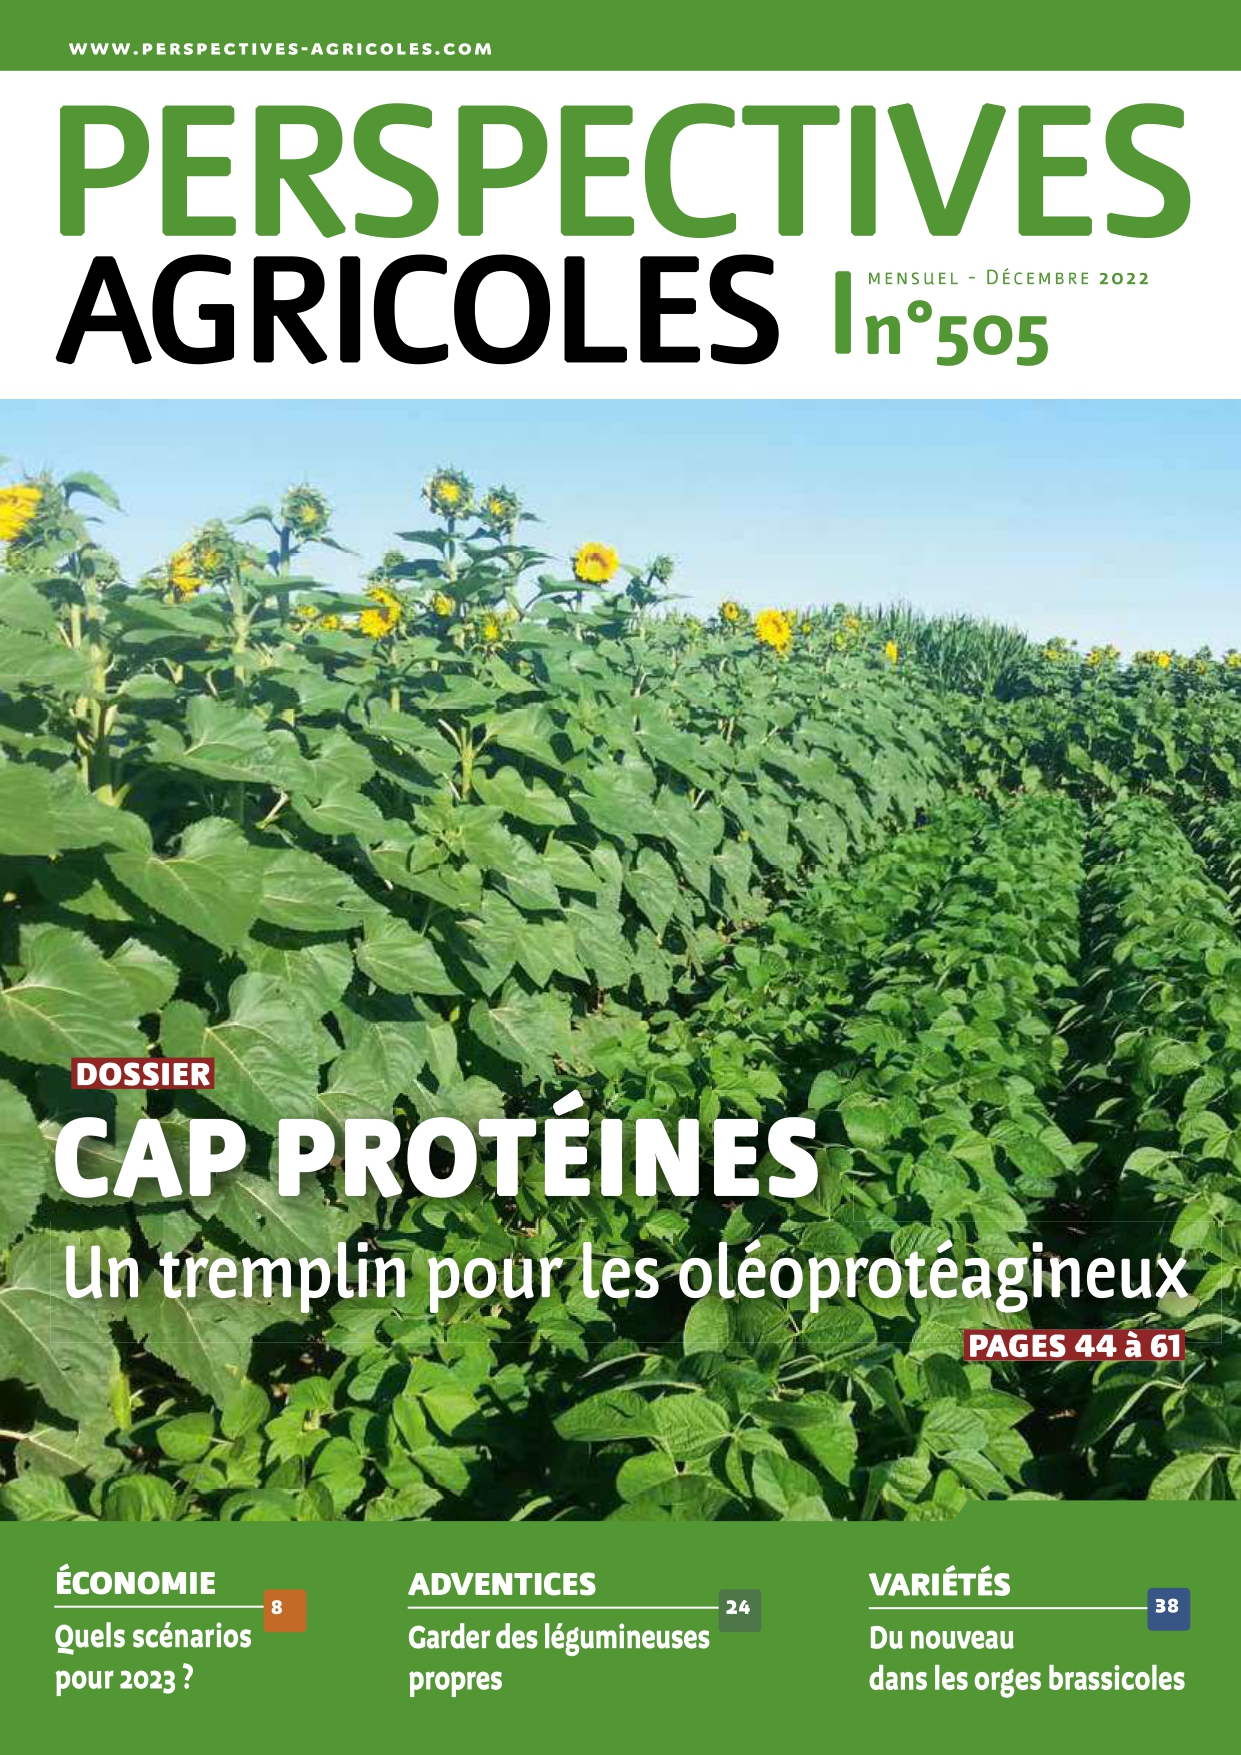 Cap Protéines - Un tremplin pour les oléoprotéagineux - Perspectives agricoles